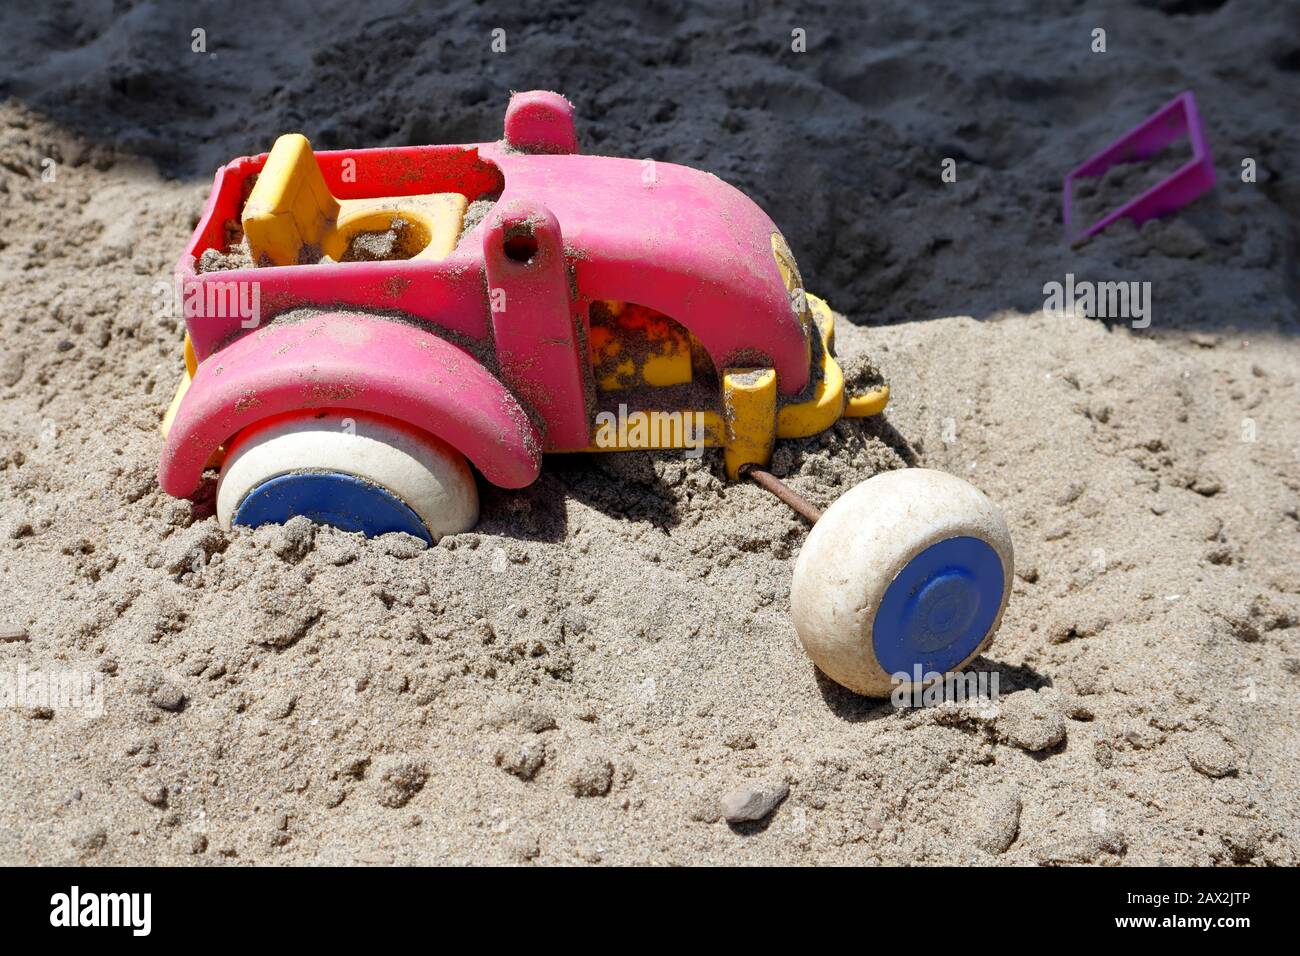 Les roues se sont détournées ! Coincé dans une rut, ce tracteur jouet dans la fosse à sable semble avoir trouvé la mission lourde et a jeté dans la serviette Banque D'Images